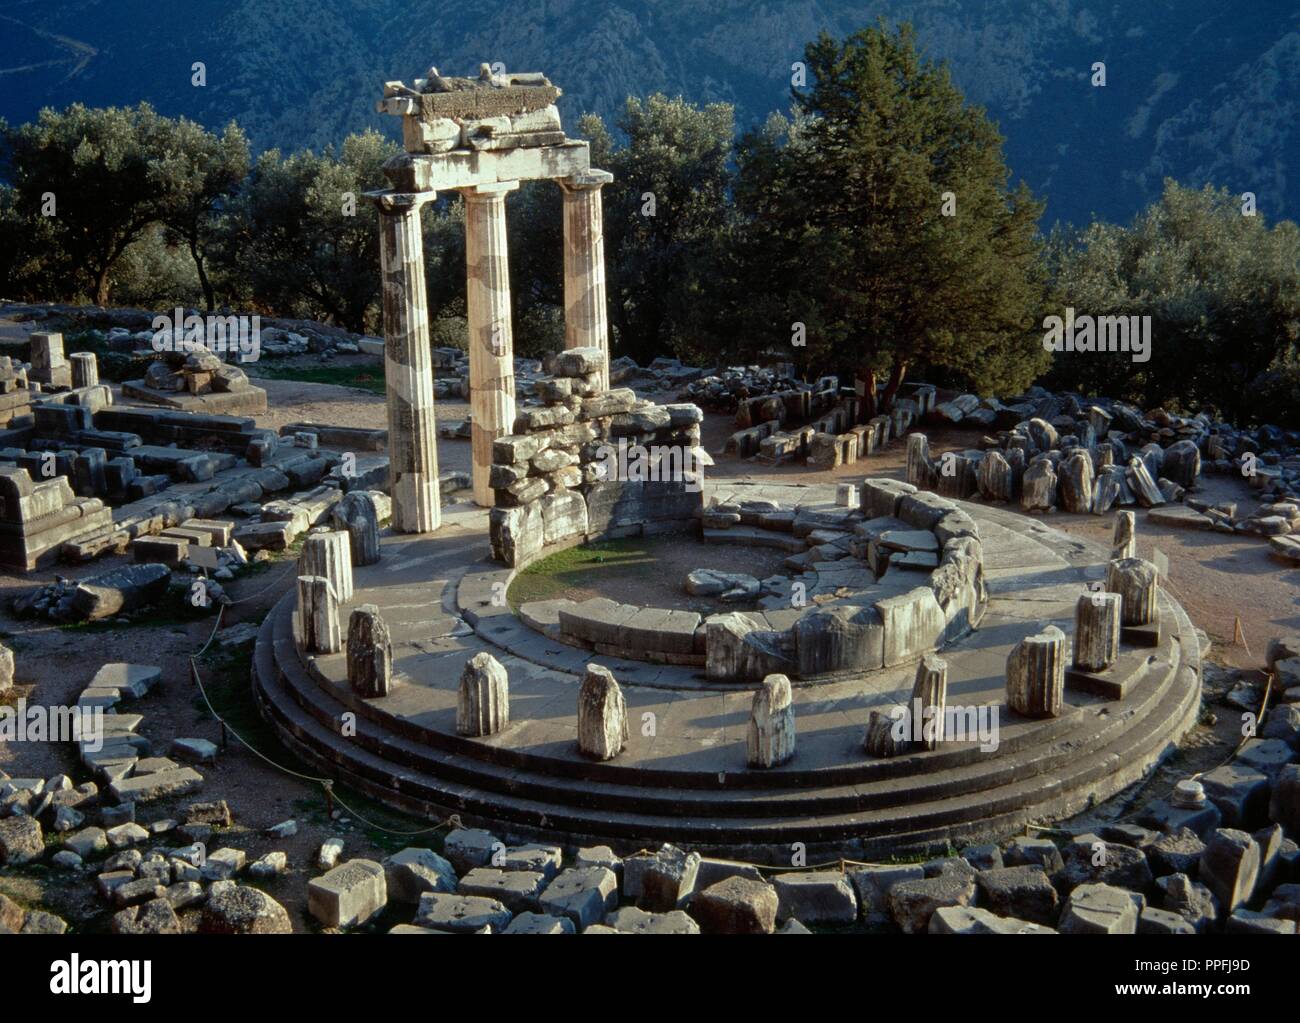 La Grecia. Santuario di Athena Pronaia in Delphi. Tholos. Tempio circolare. Del IV secolo A.C. Resti del ricostruito tre colonne doriche della tholos. Foto Stock